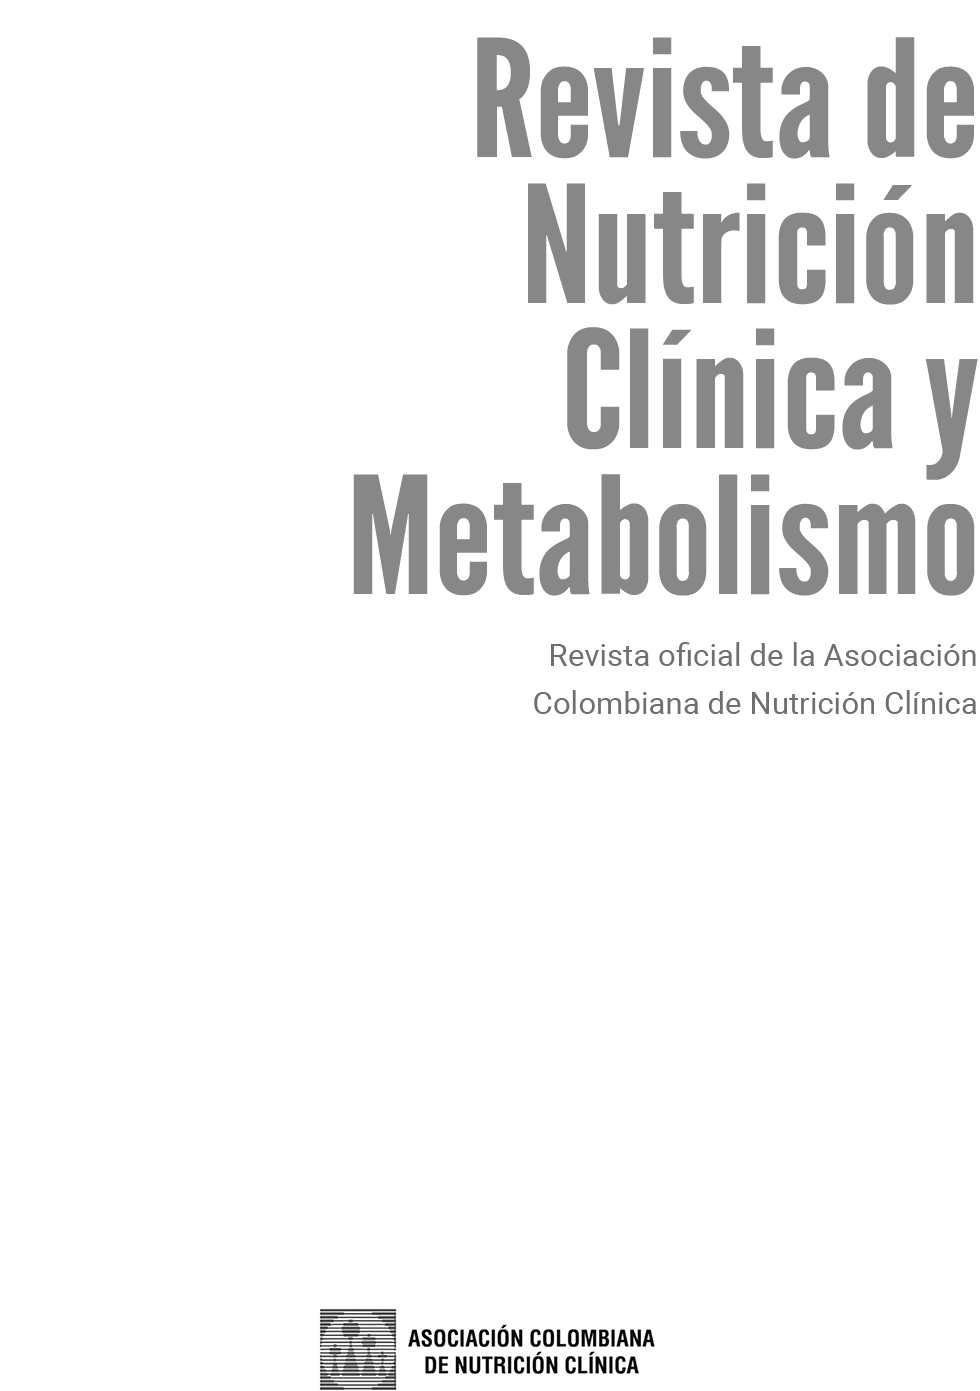 Vista de Revista completa Vol 4 N 1 | Revista de Nutrición Clínica y  Metabolismo